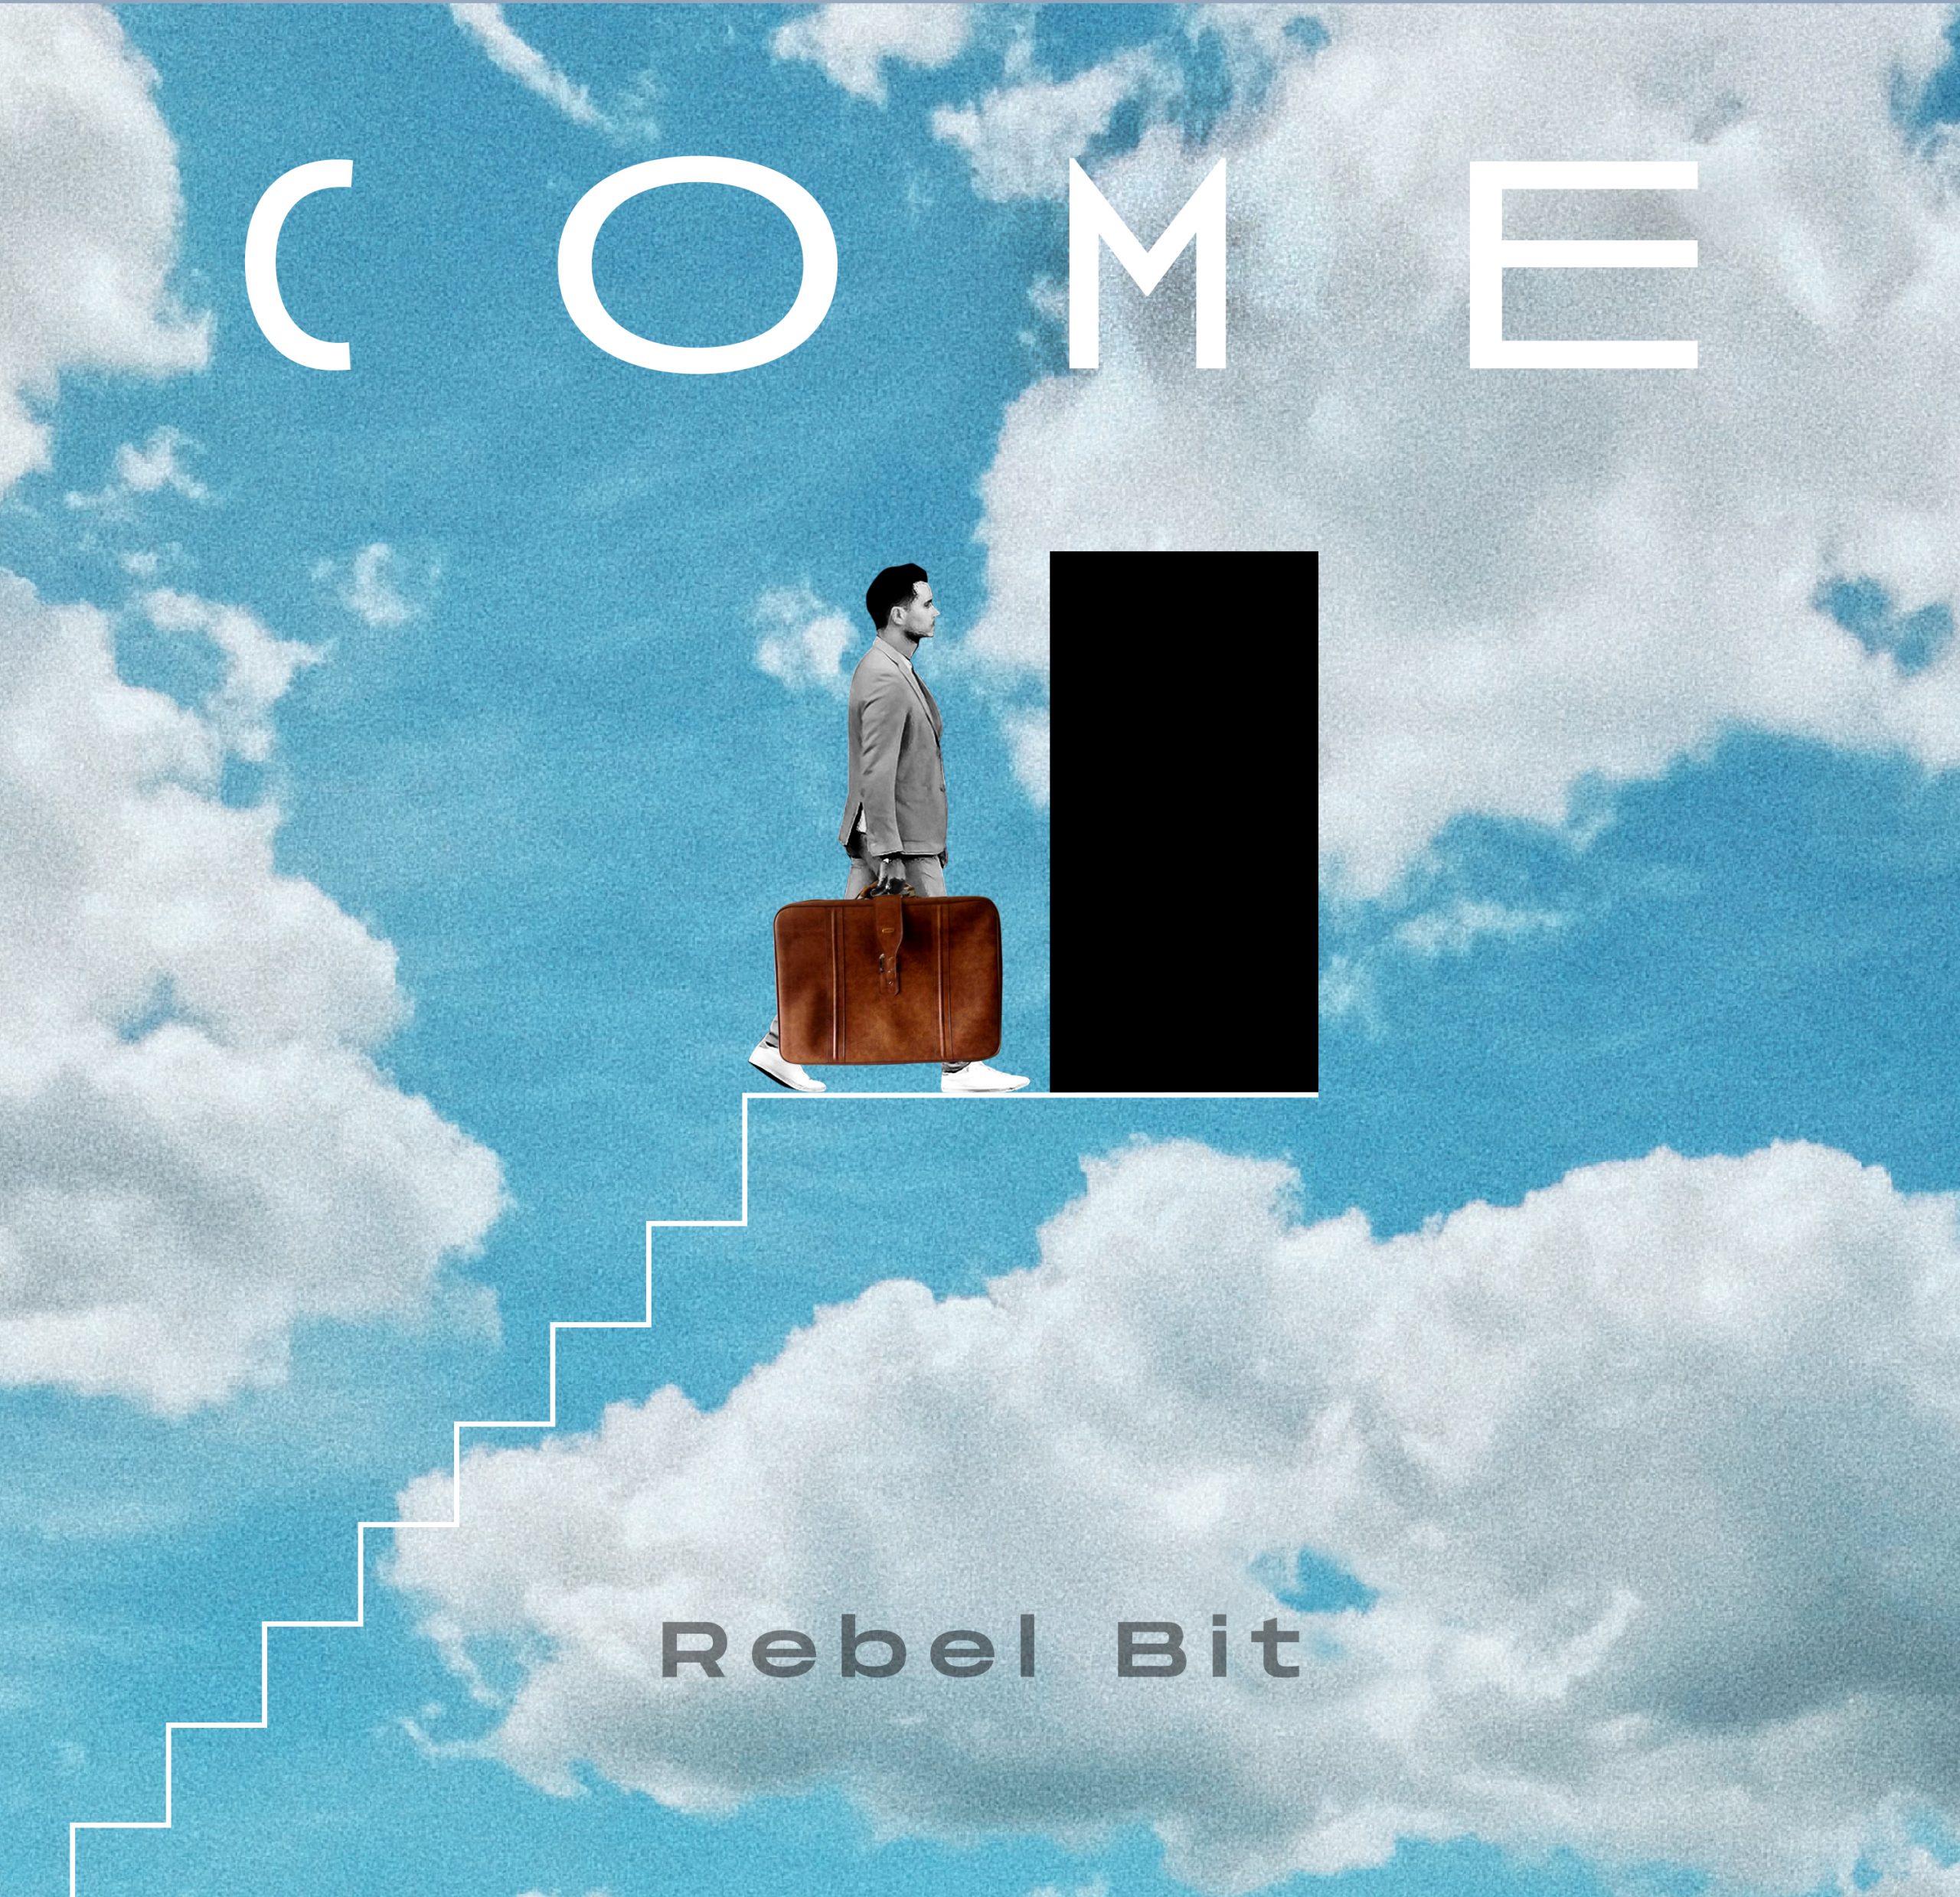 Esce “Toccaterra”, il videoclip del nuovo singolo dei Rebel Bit che accompagna il disco “Come”